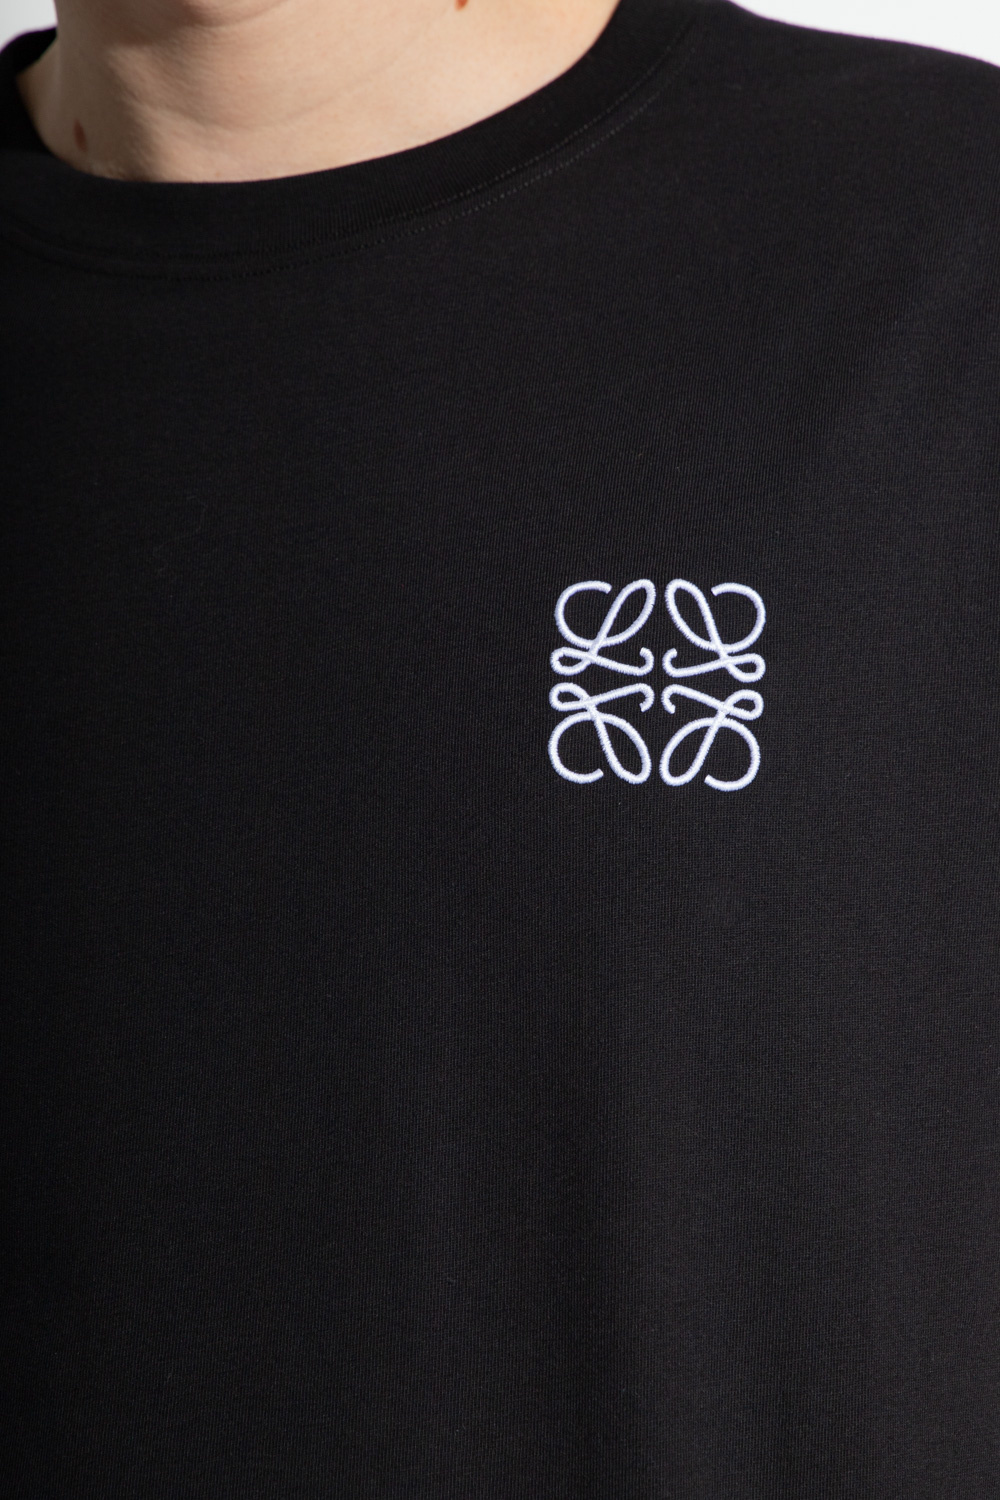 Loewe T-shirt with logo | Men's Clothing | Vitkac